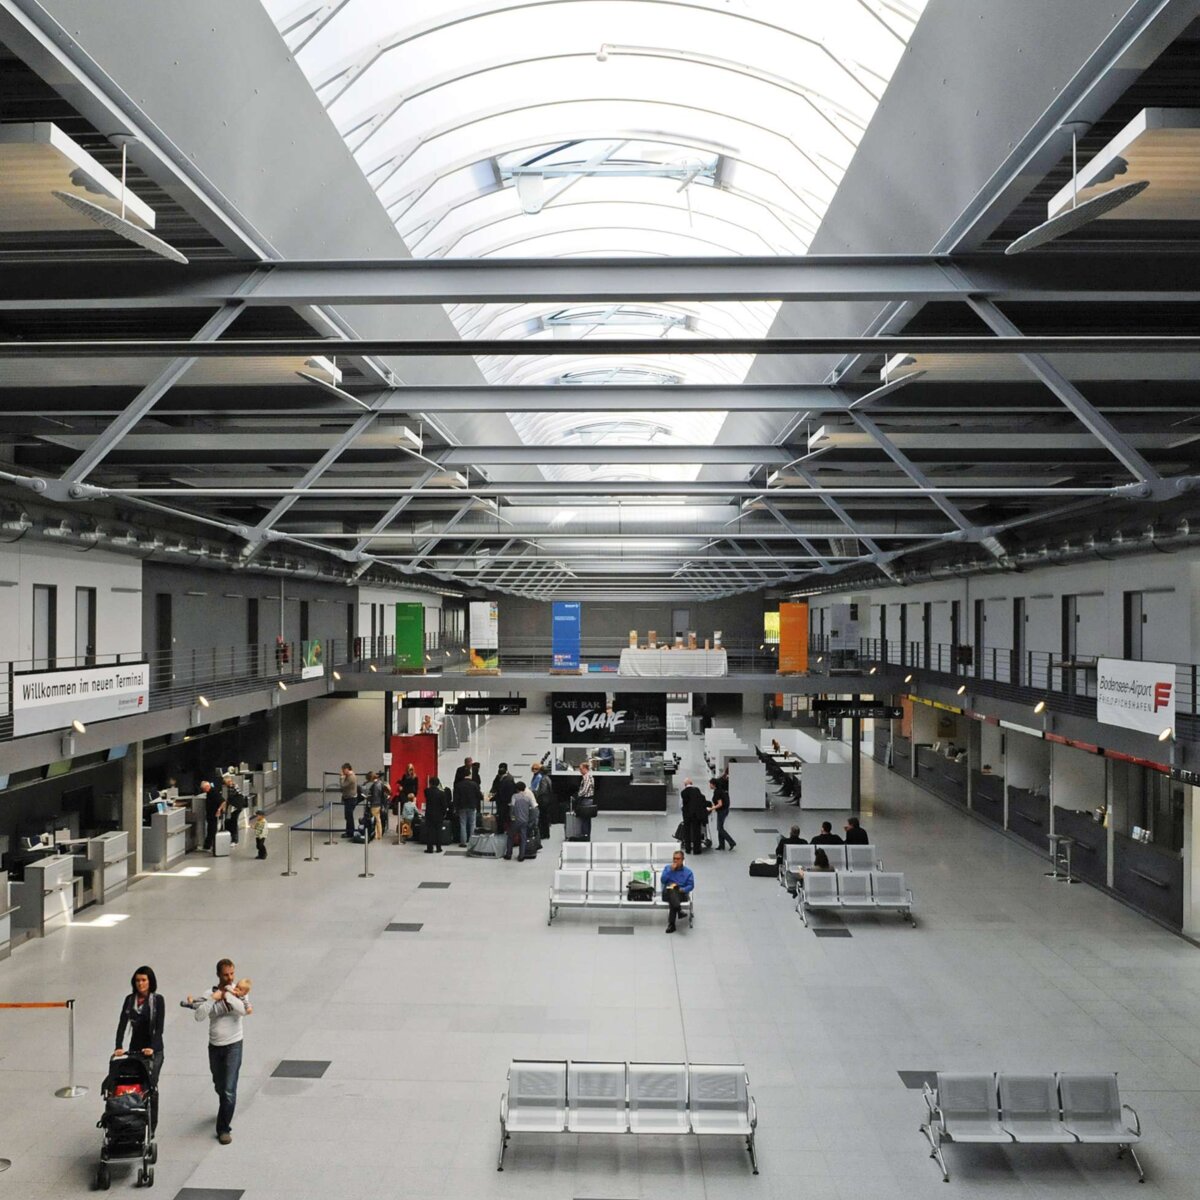 Bodensee-Airport Friedrichshafen | Friedrichshafen • 1 x Topline 65 m x 5 m, 7 x Topline 7 m x 3 m, 16 NSHEV flaps